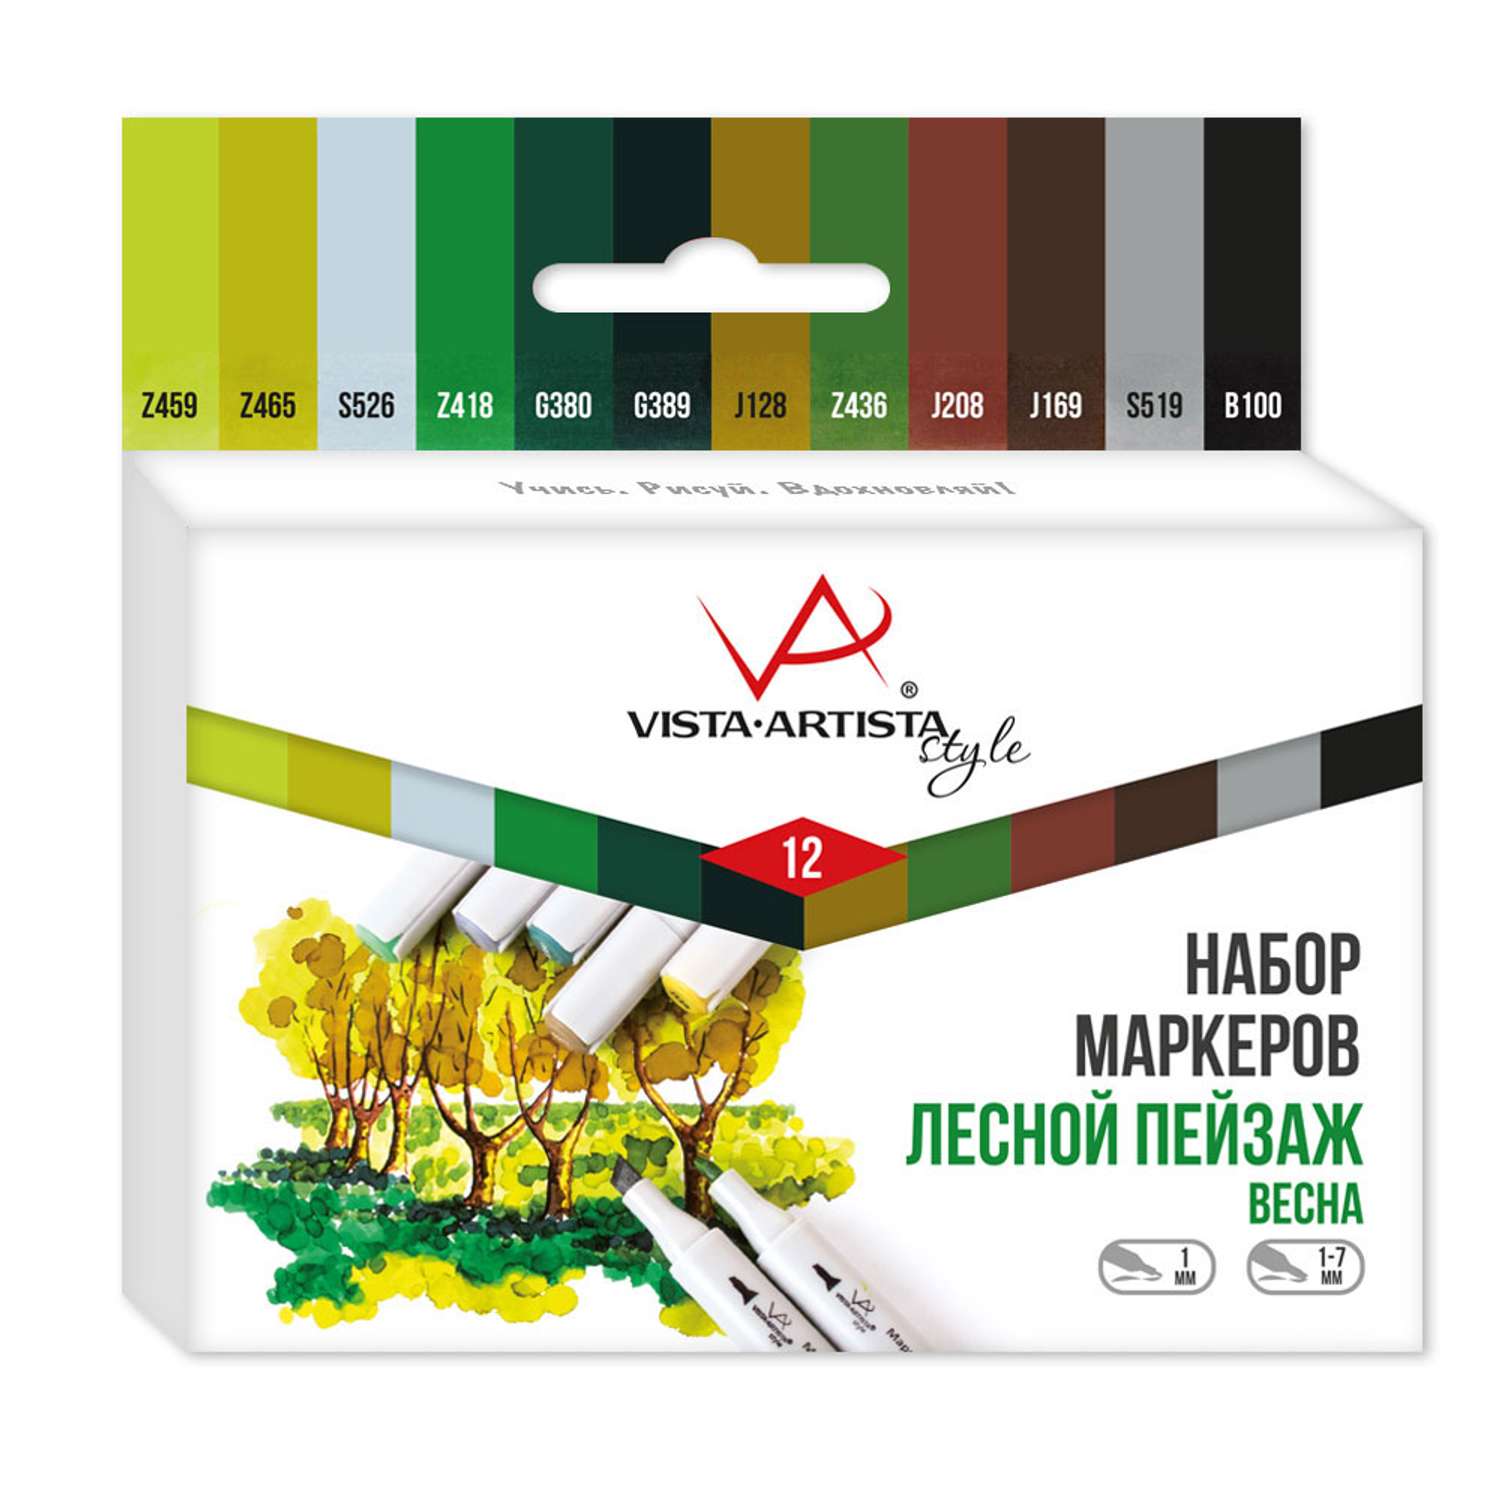 Набор маркеров VISTA-ARTISTA Style на спиртовой основе SMA-12 12 цветов 03 - Лесной пейзаж Весна - фото 1